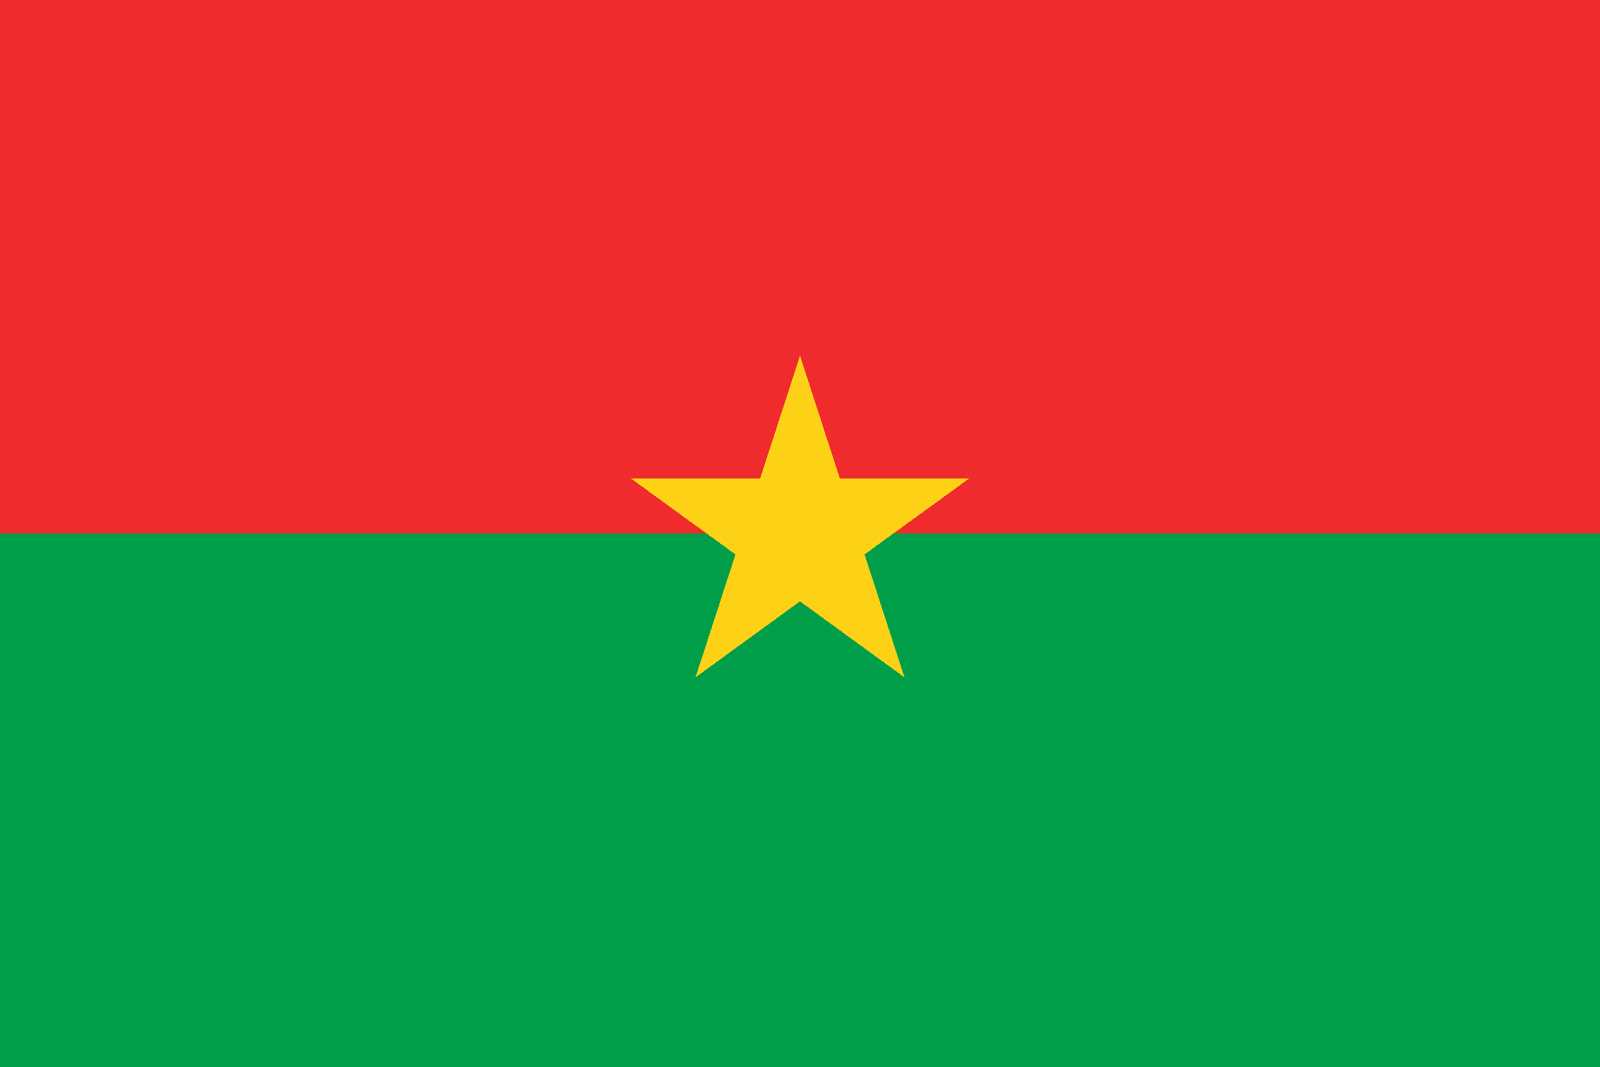 Burkina Faso - Powered by Eduhyme.com